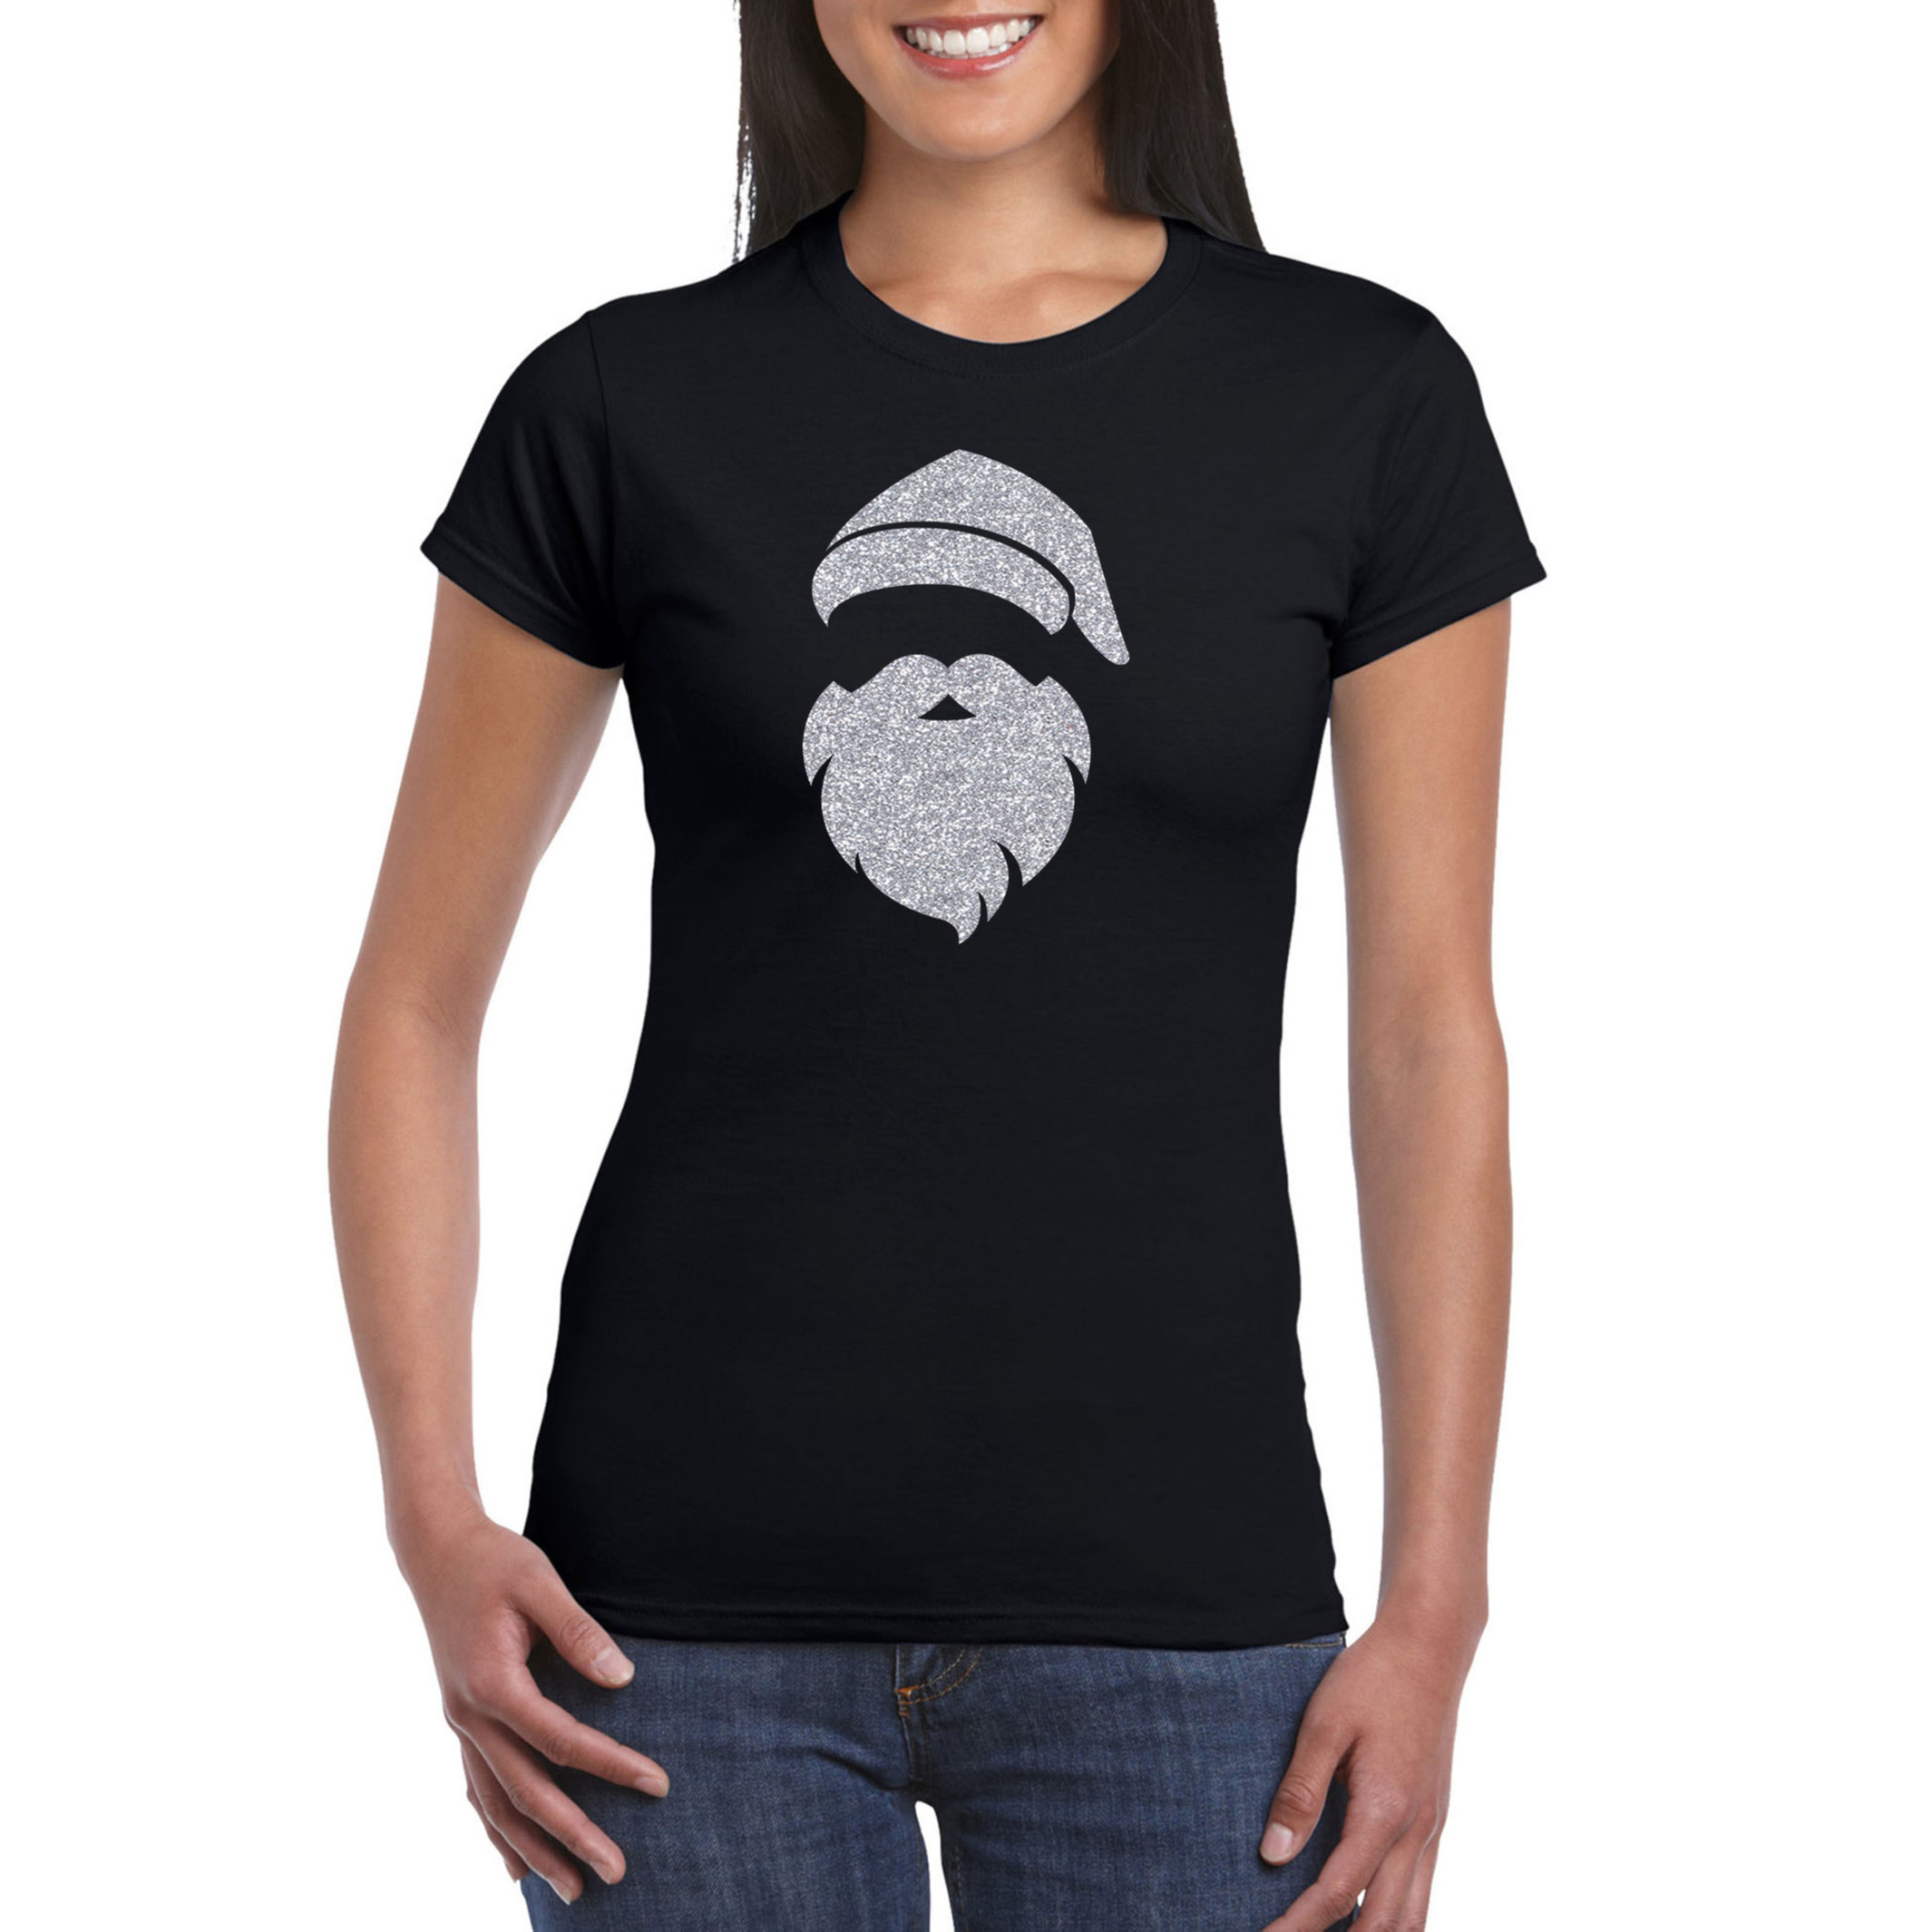 Kerstman hoofd Kerst t-shirt zwart voor dames met zilveren glitter bedrukking